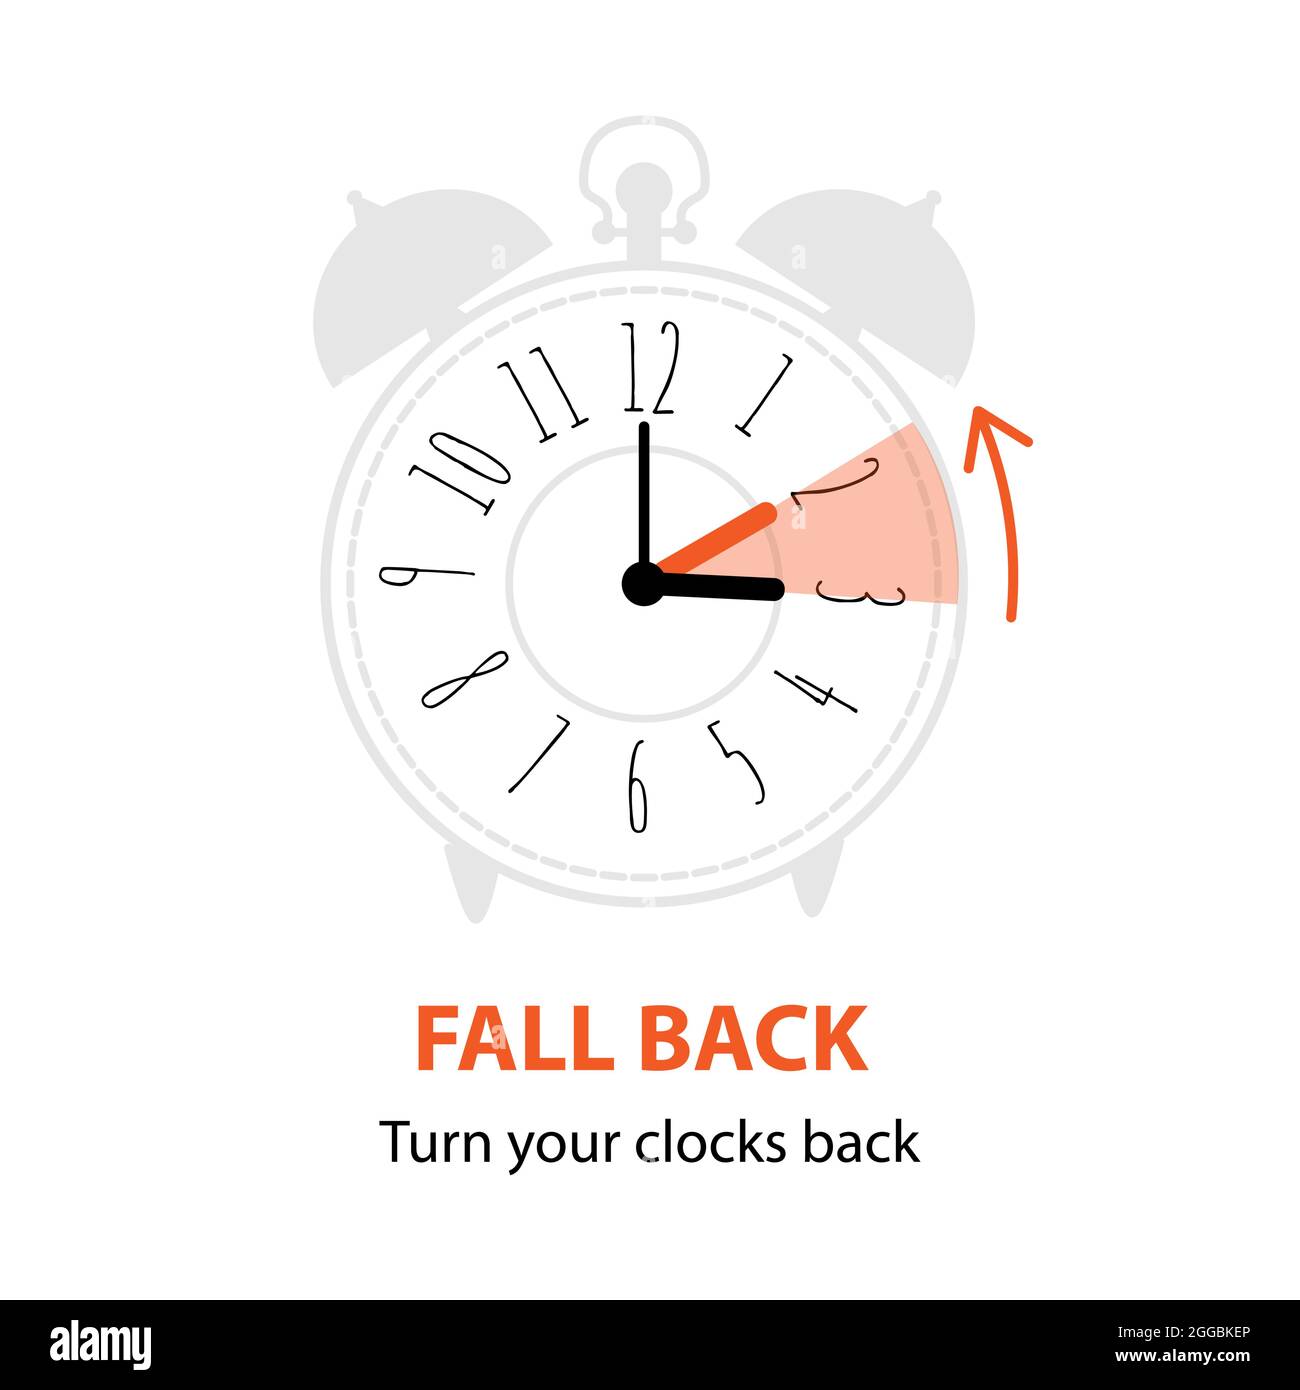 Fallback-Konzept mit grafischem Alarm und Zeitplan zur Einstellung der Uhr um eine Stunde. Das Ende der Sommerzeit. Vektor-Illustration in moderner Wohnung Stock Vektor